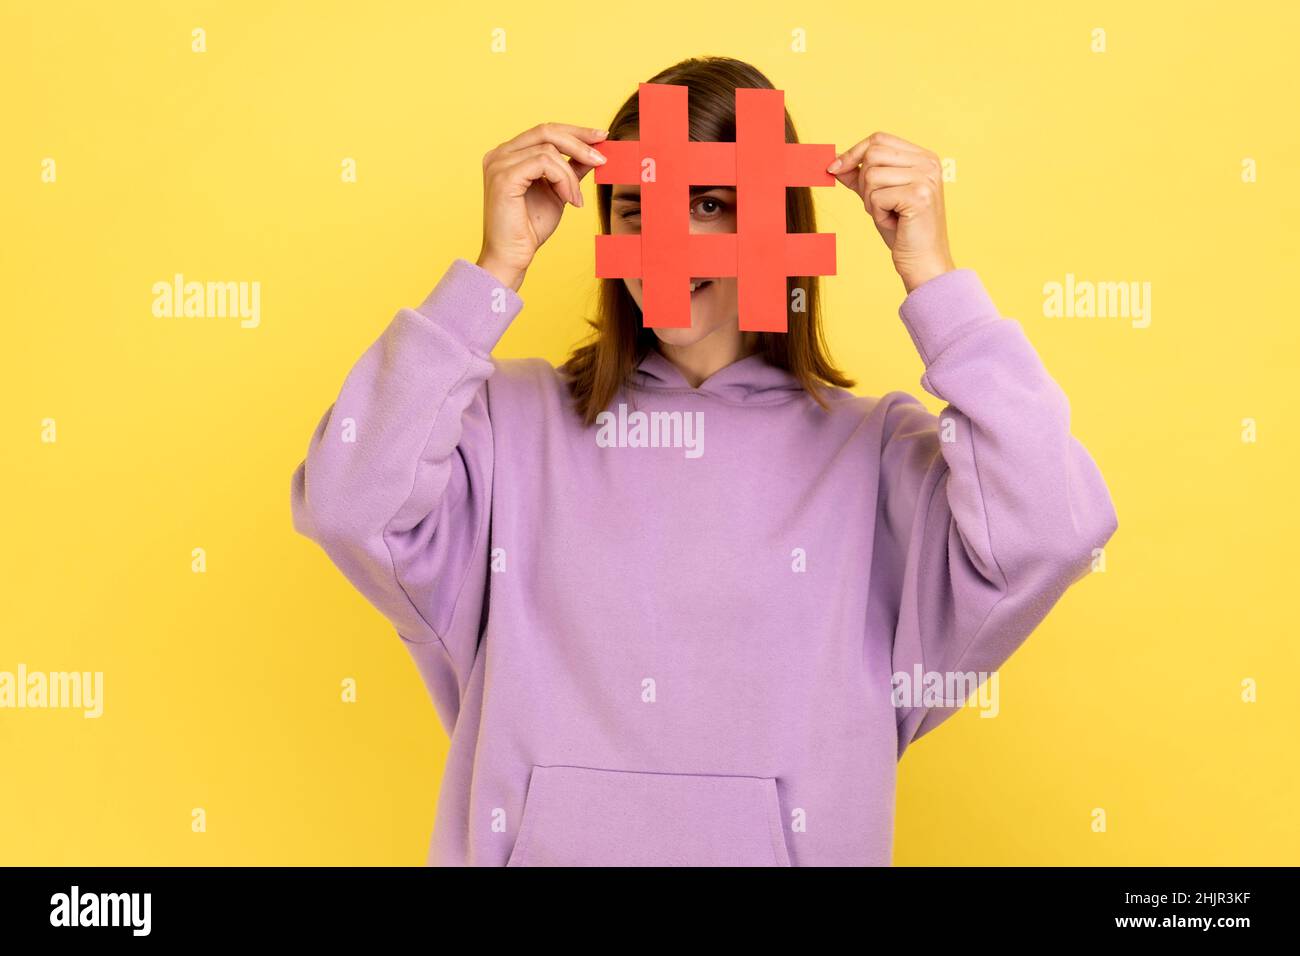 Portrait d'une femme couvrant le visage avec le symbole hashtag des médias sociaux, recommandant de suivre le contenu à la mode, blog populaire, portant le sweat à capuche violet.Studio d'intérieur isolé sur fond jaune. Banque D'Images